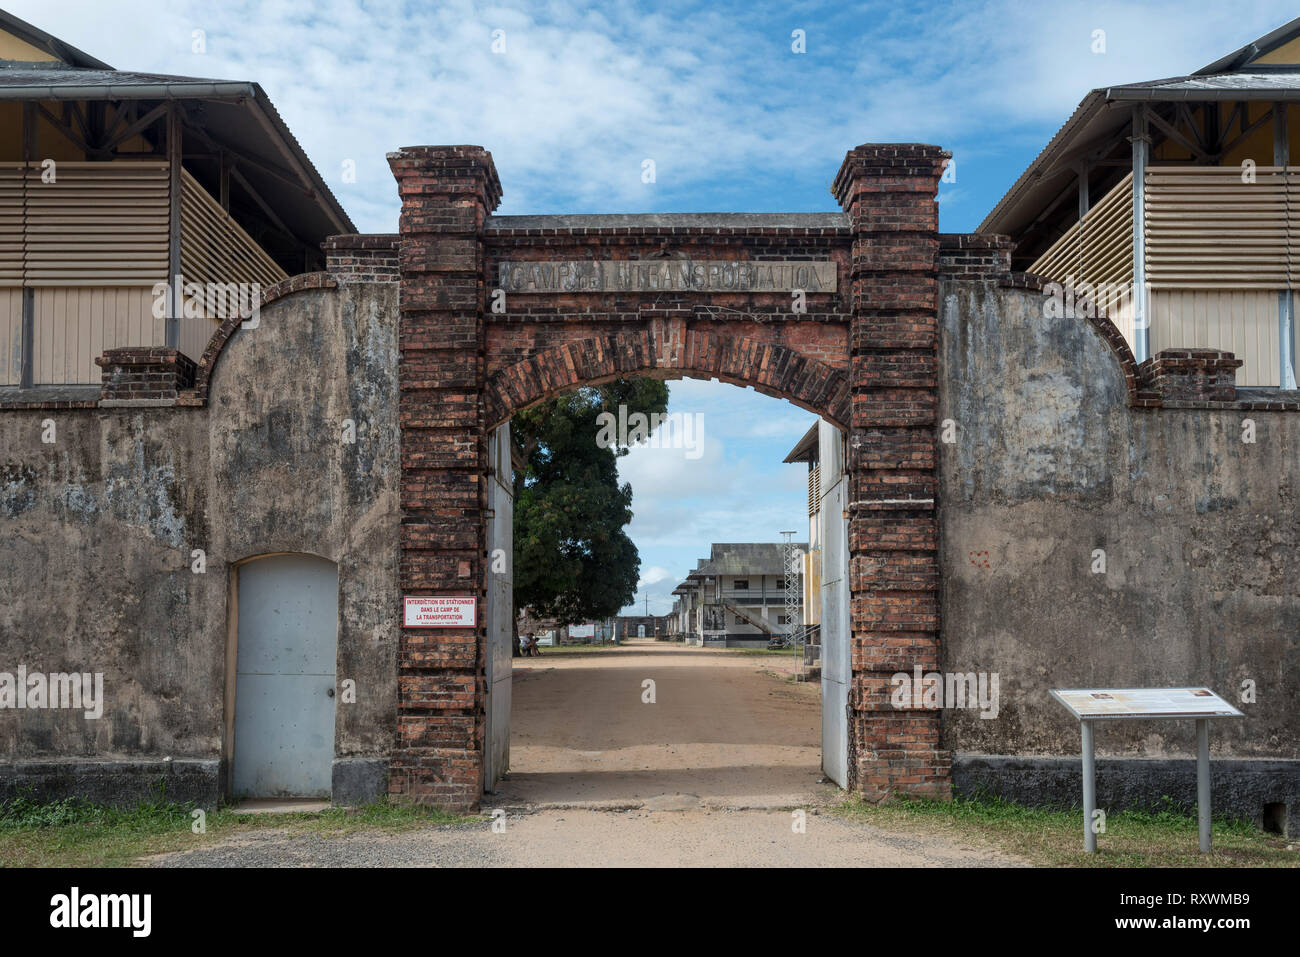 Prigione di St-Laurent du Maroni, in Guiana francese. Ingresso del campo Foto Stock